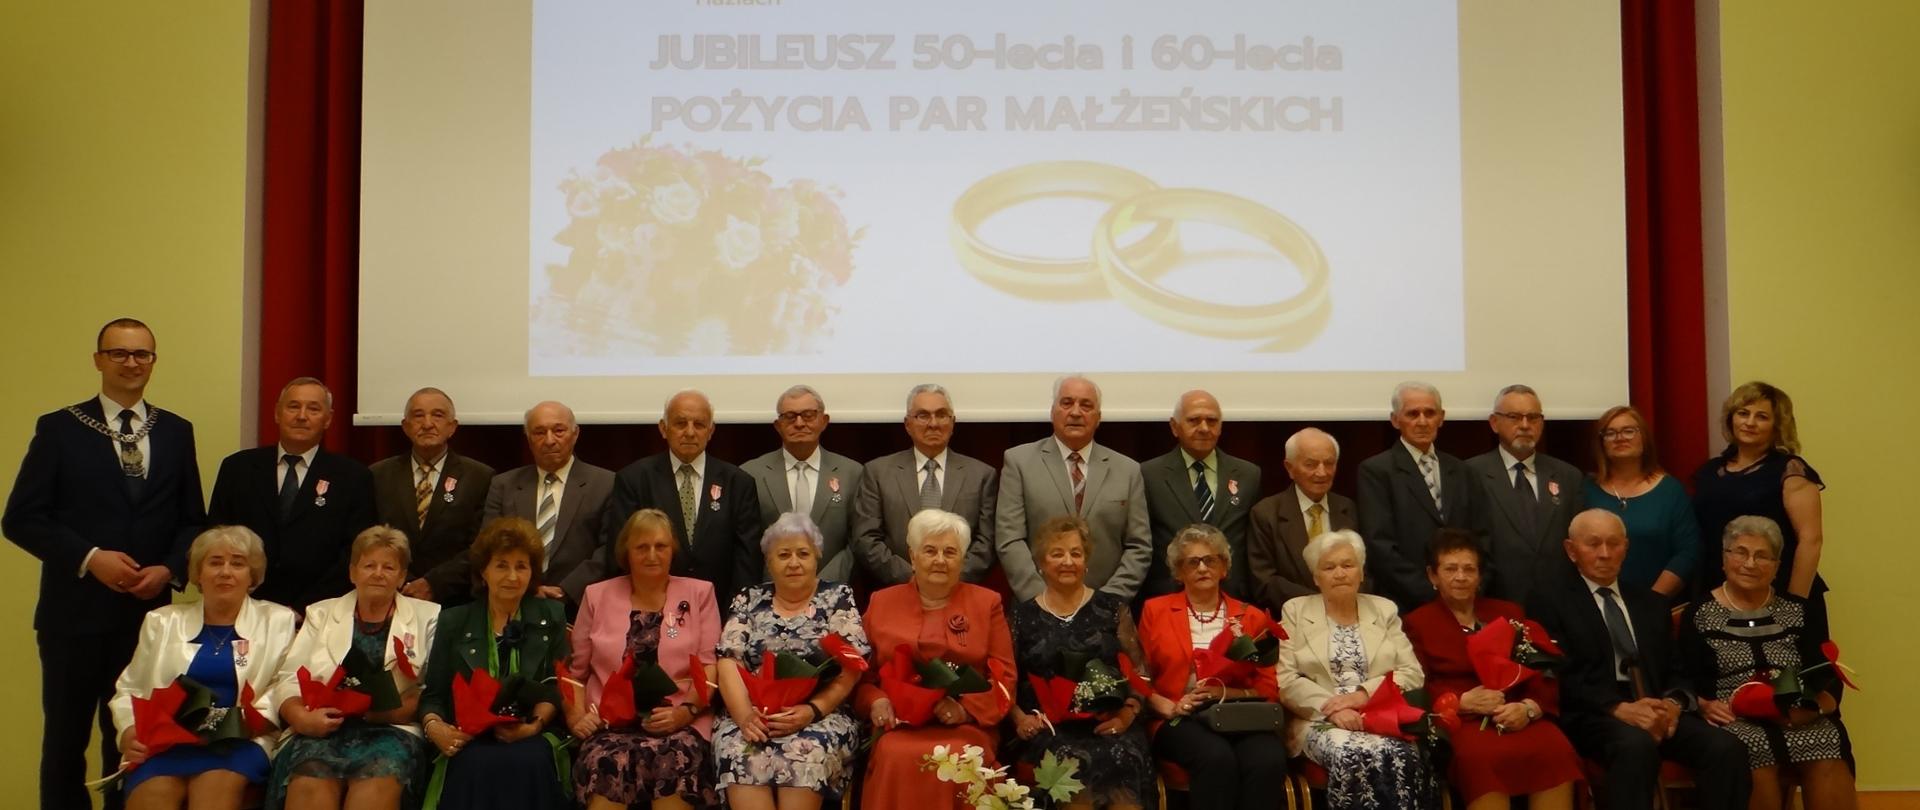 Zacni Jubilaci 50 i 60 lat pożycia małżeńskiego. Zbiorowa fotografia wykonana w sali widowiskowej Gminnej Biblioteki Publicznej. Osoby w pierwszym rzędzie siedzą na krzesłach, drugi rząd stoi.